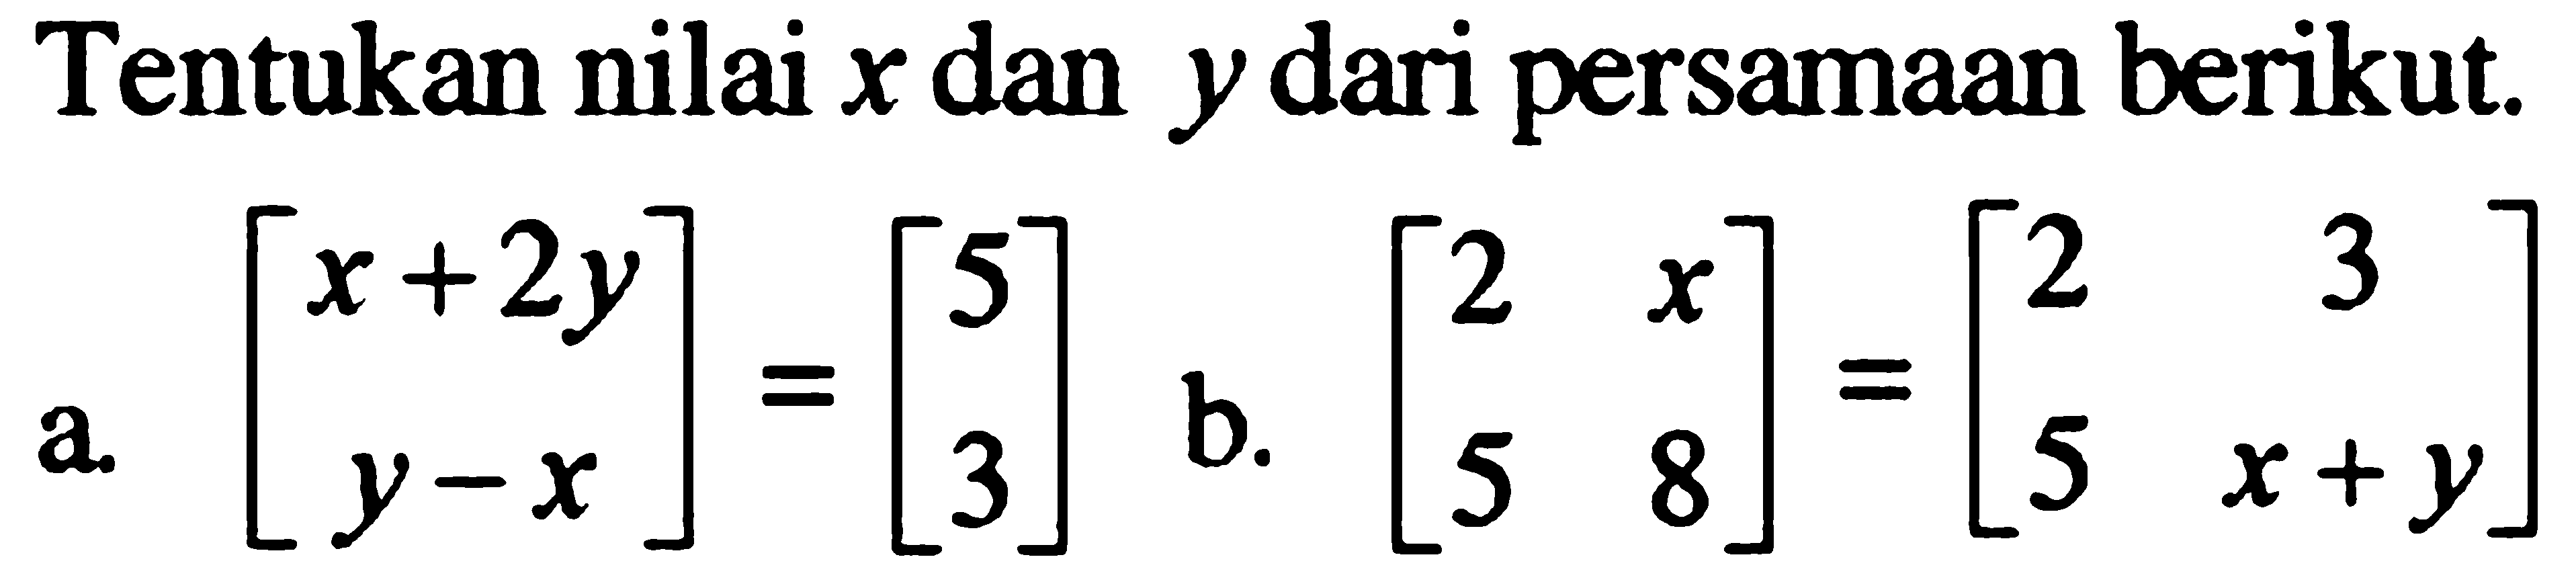 Tentukan nilai x dan y dari persamaan berikut. a.[x+2y y-x]=[5 3] b.[2 x 5 8]=[2 3 5 x+y]